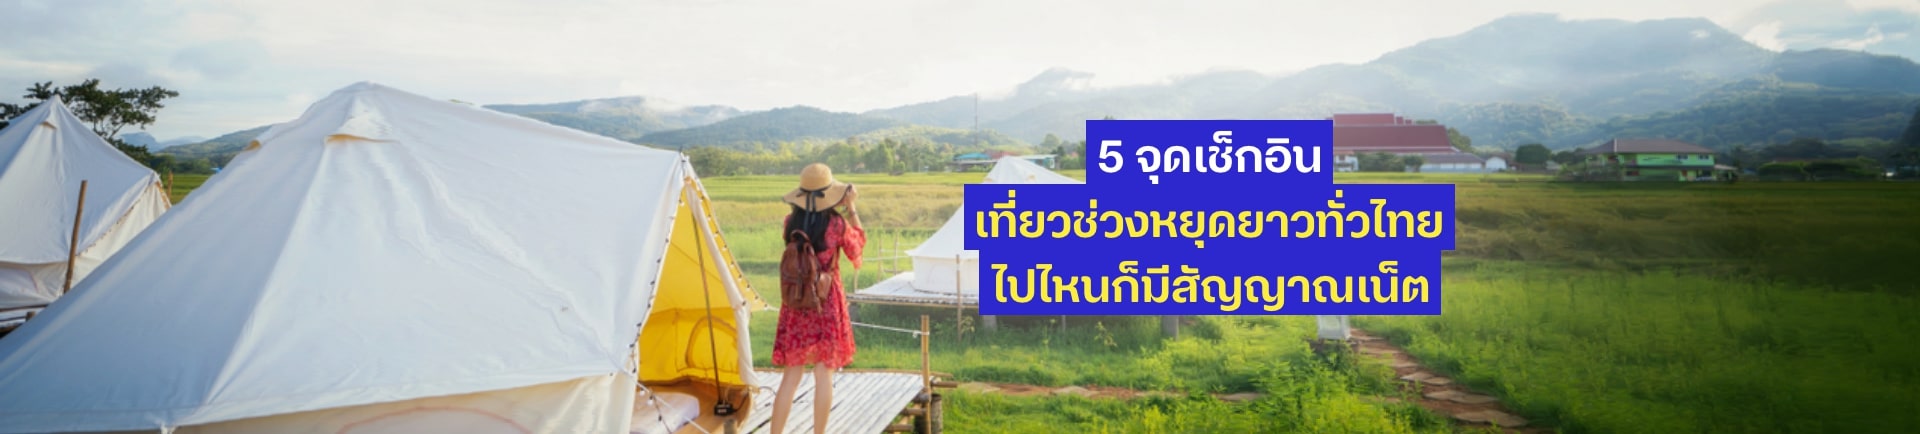 5 จุดเช็กอินเที่ยวช่วงหยุดยาวทั่วไทย ไปไหนก็มีสัญญาณเน็ต!